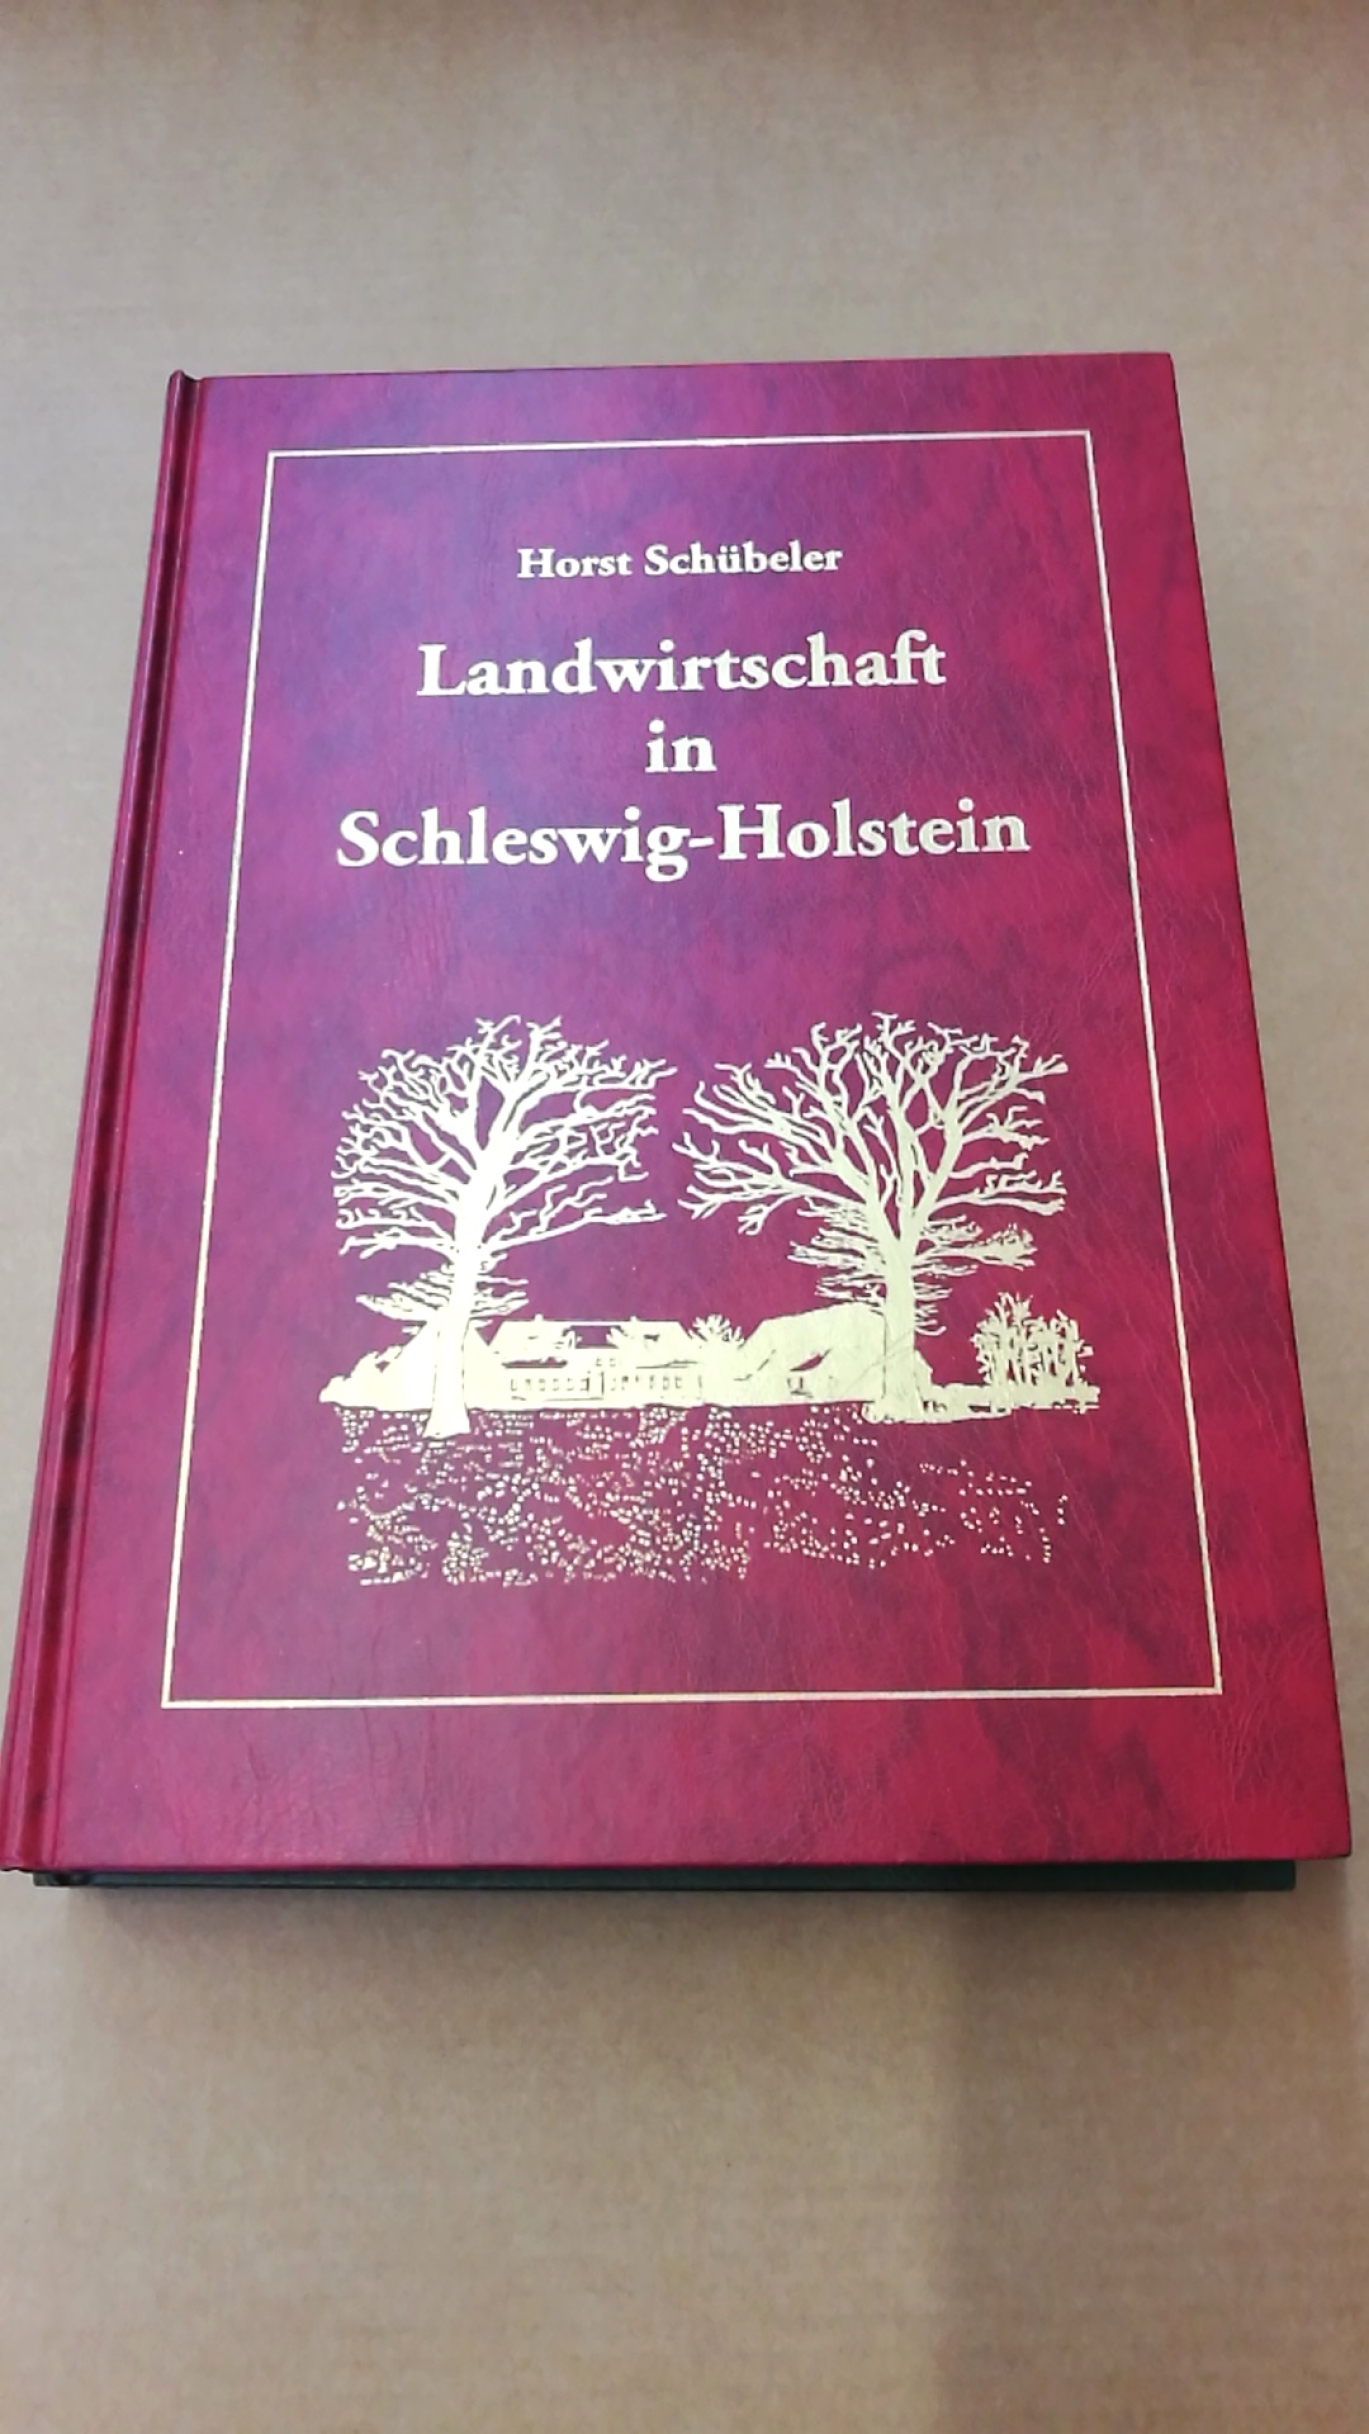 Schübler, Horst: Landwirtschaft in Schleswig-Holstein. 3 Bände (=vollst.) Bilddokumentation zur Agrargeschichte.